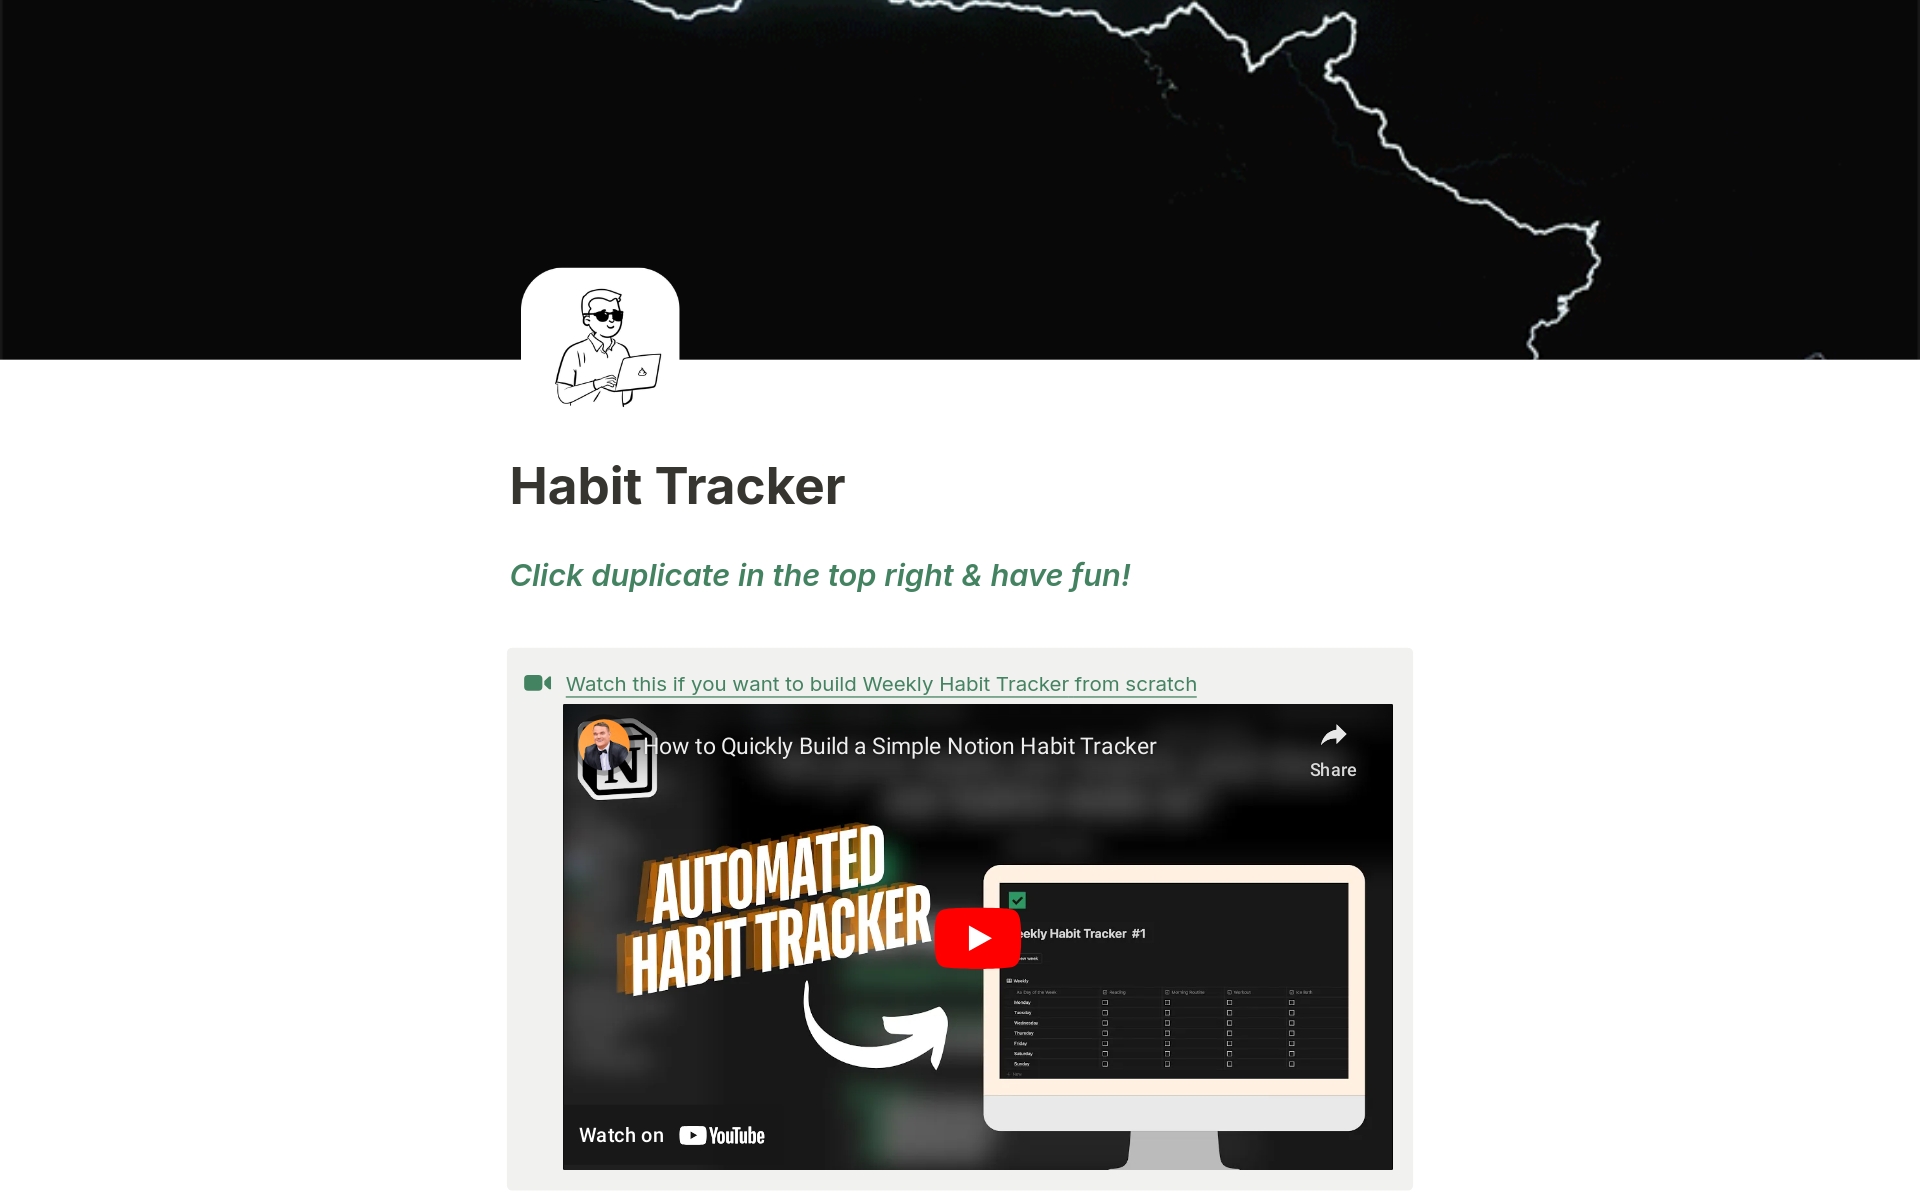 Vista previa de una plantilla para Simple Habit Tracker